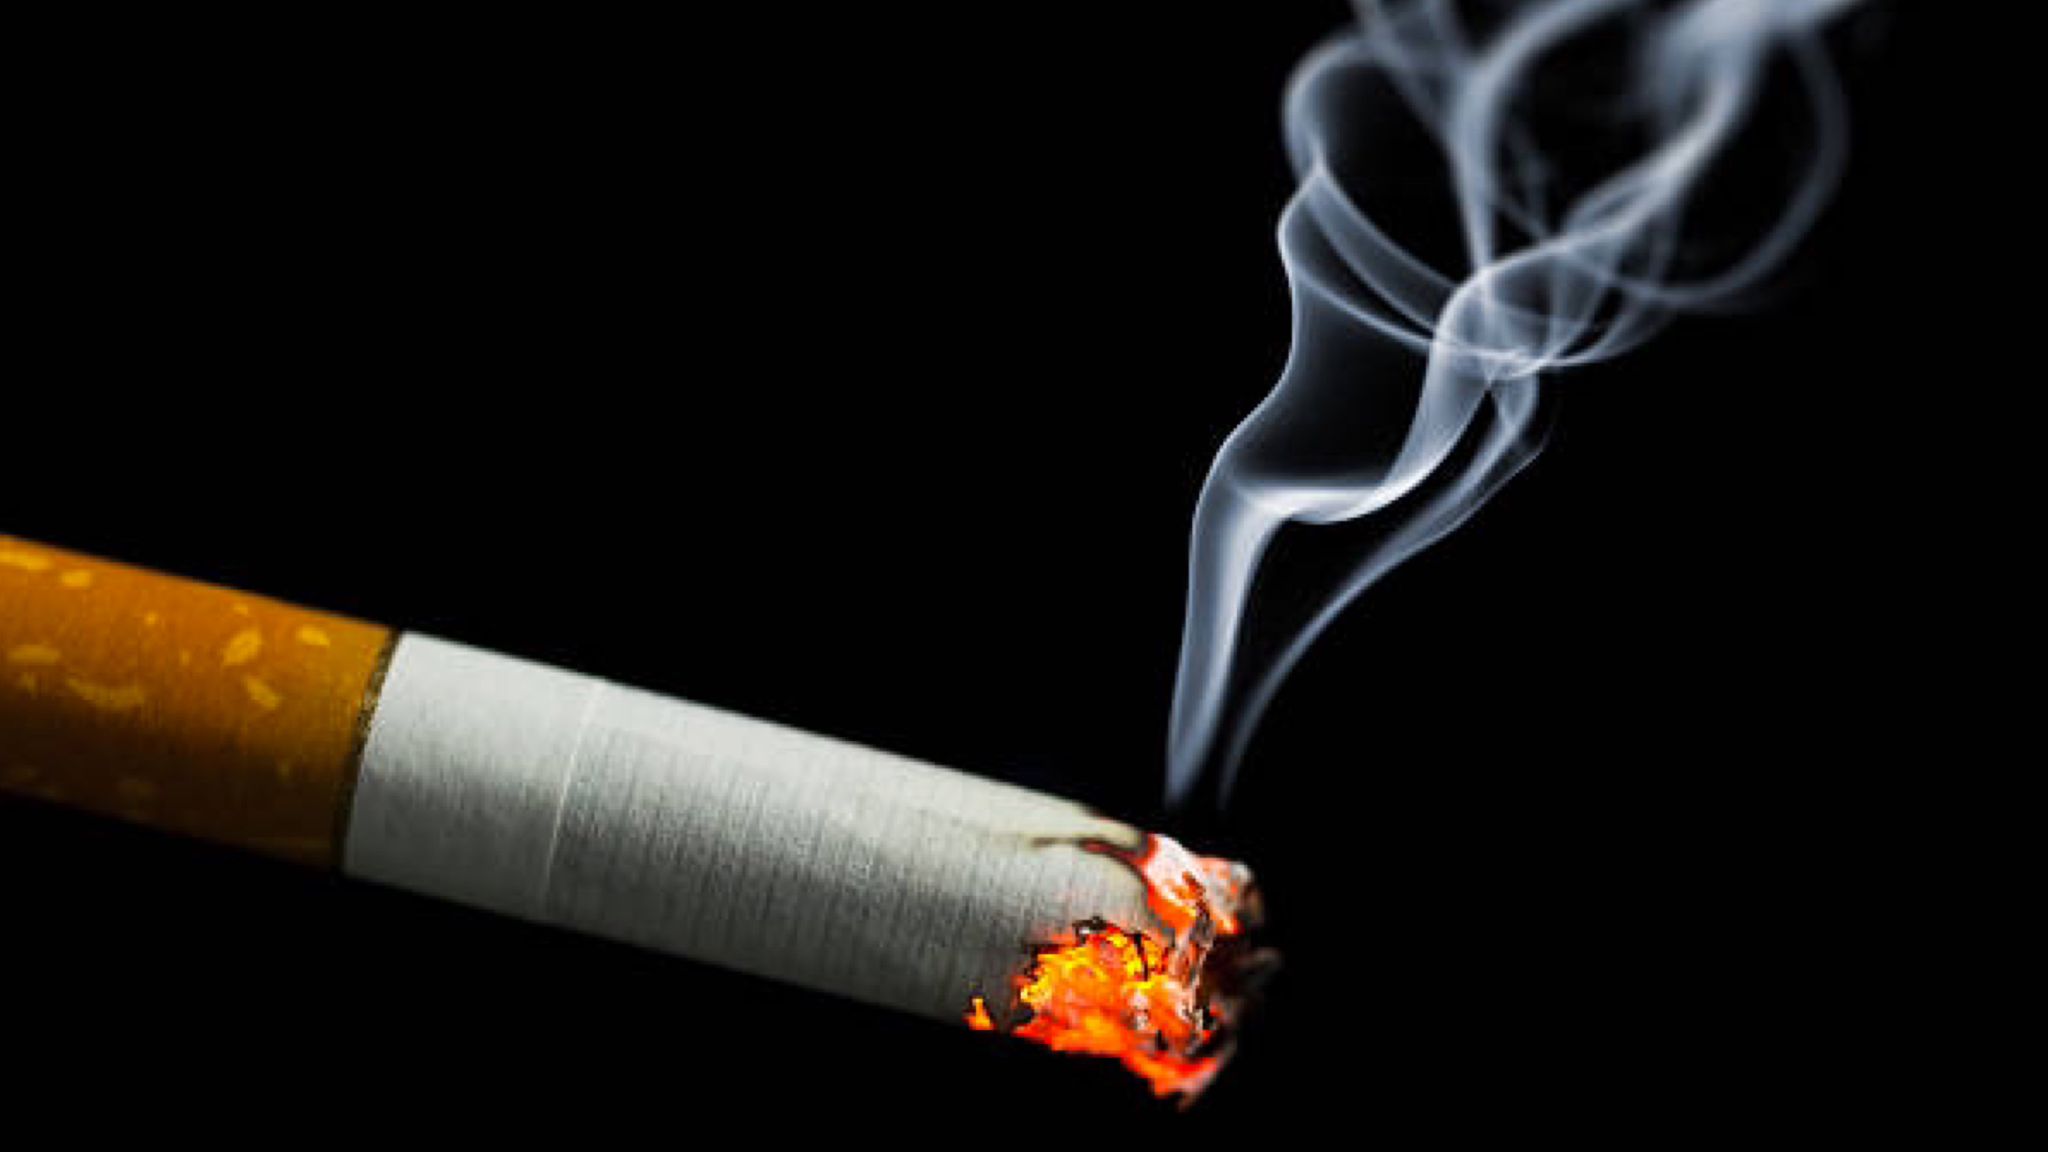 Fumo e salute: alcuni consigli